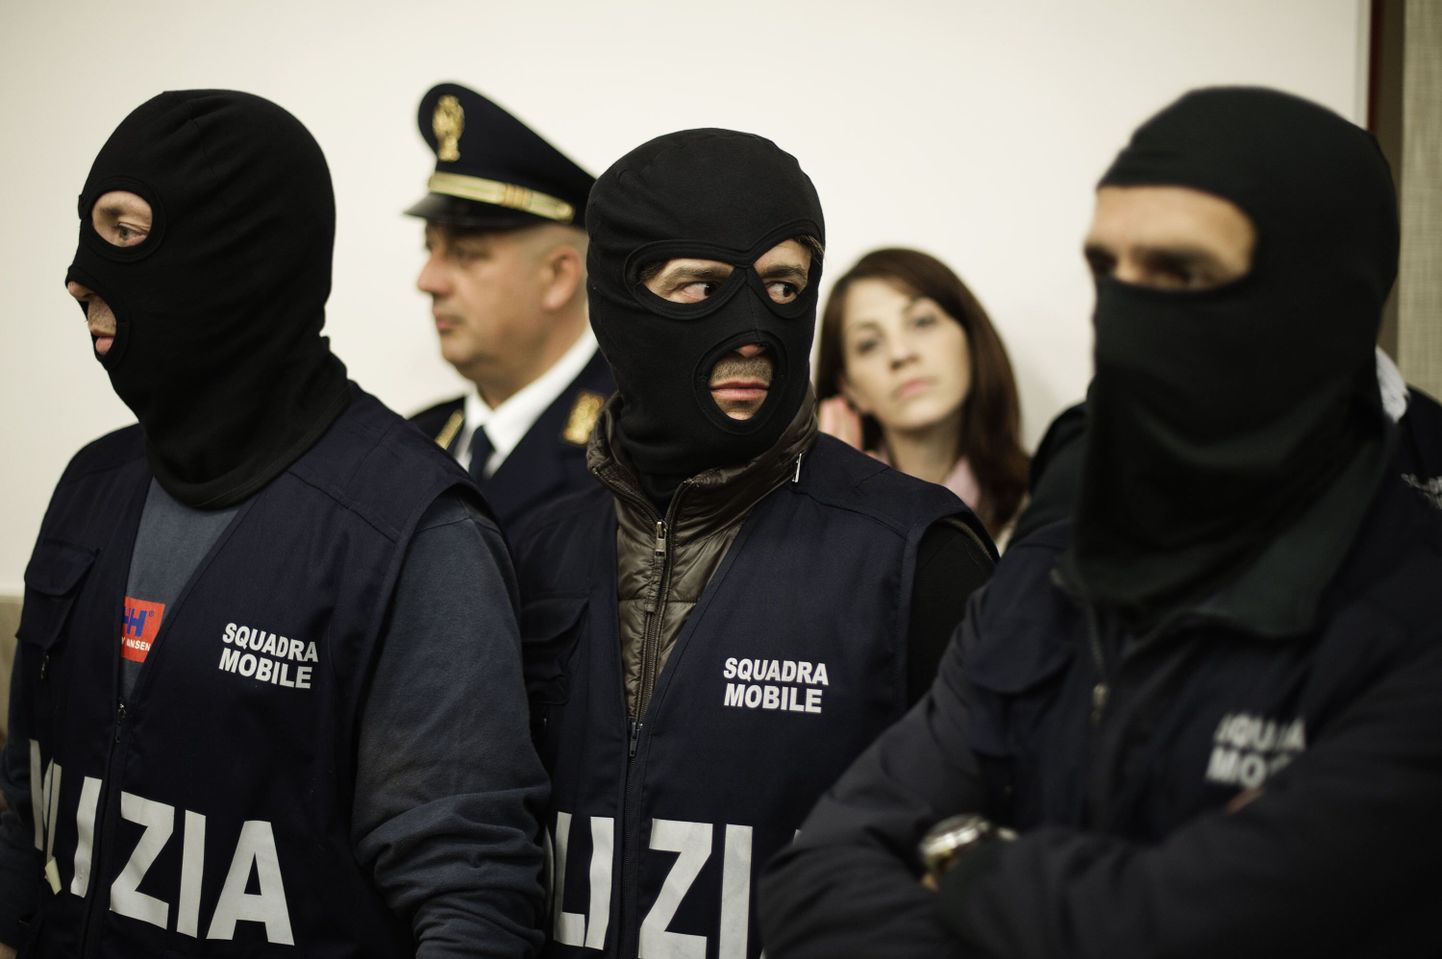 Itaalia maffiavastasele võitlusele spetsialiseerunud politseiametnikud.